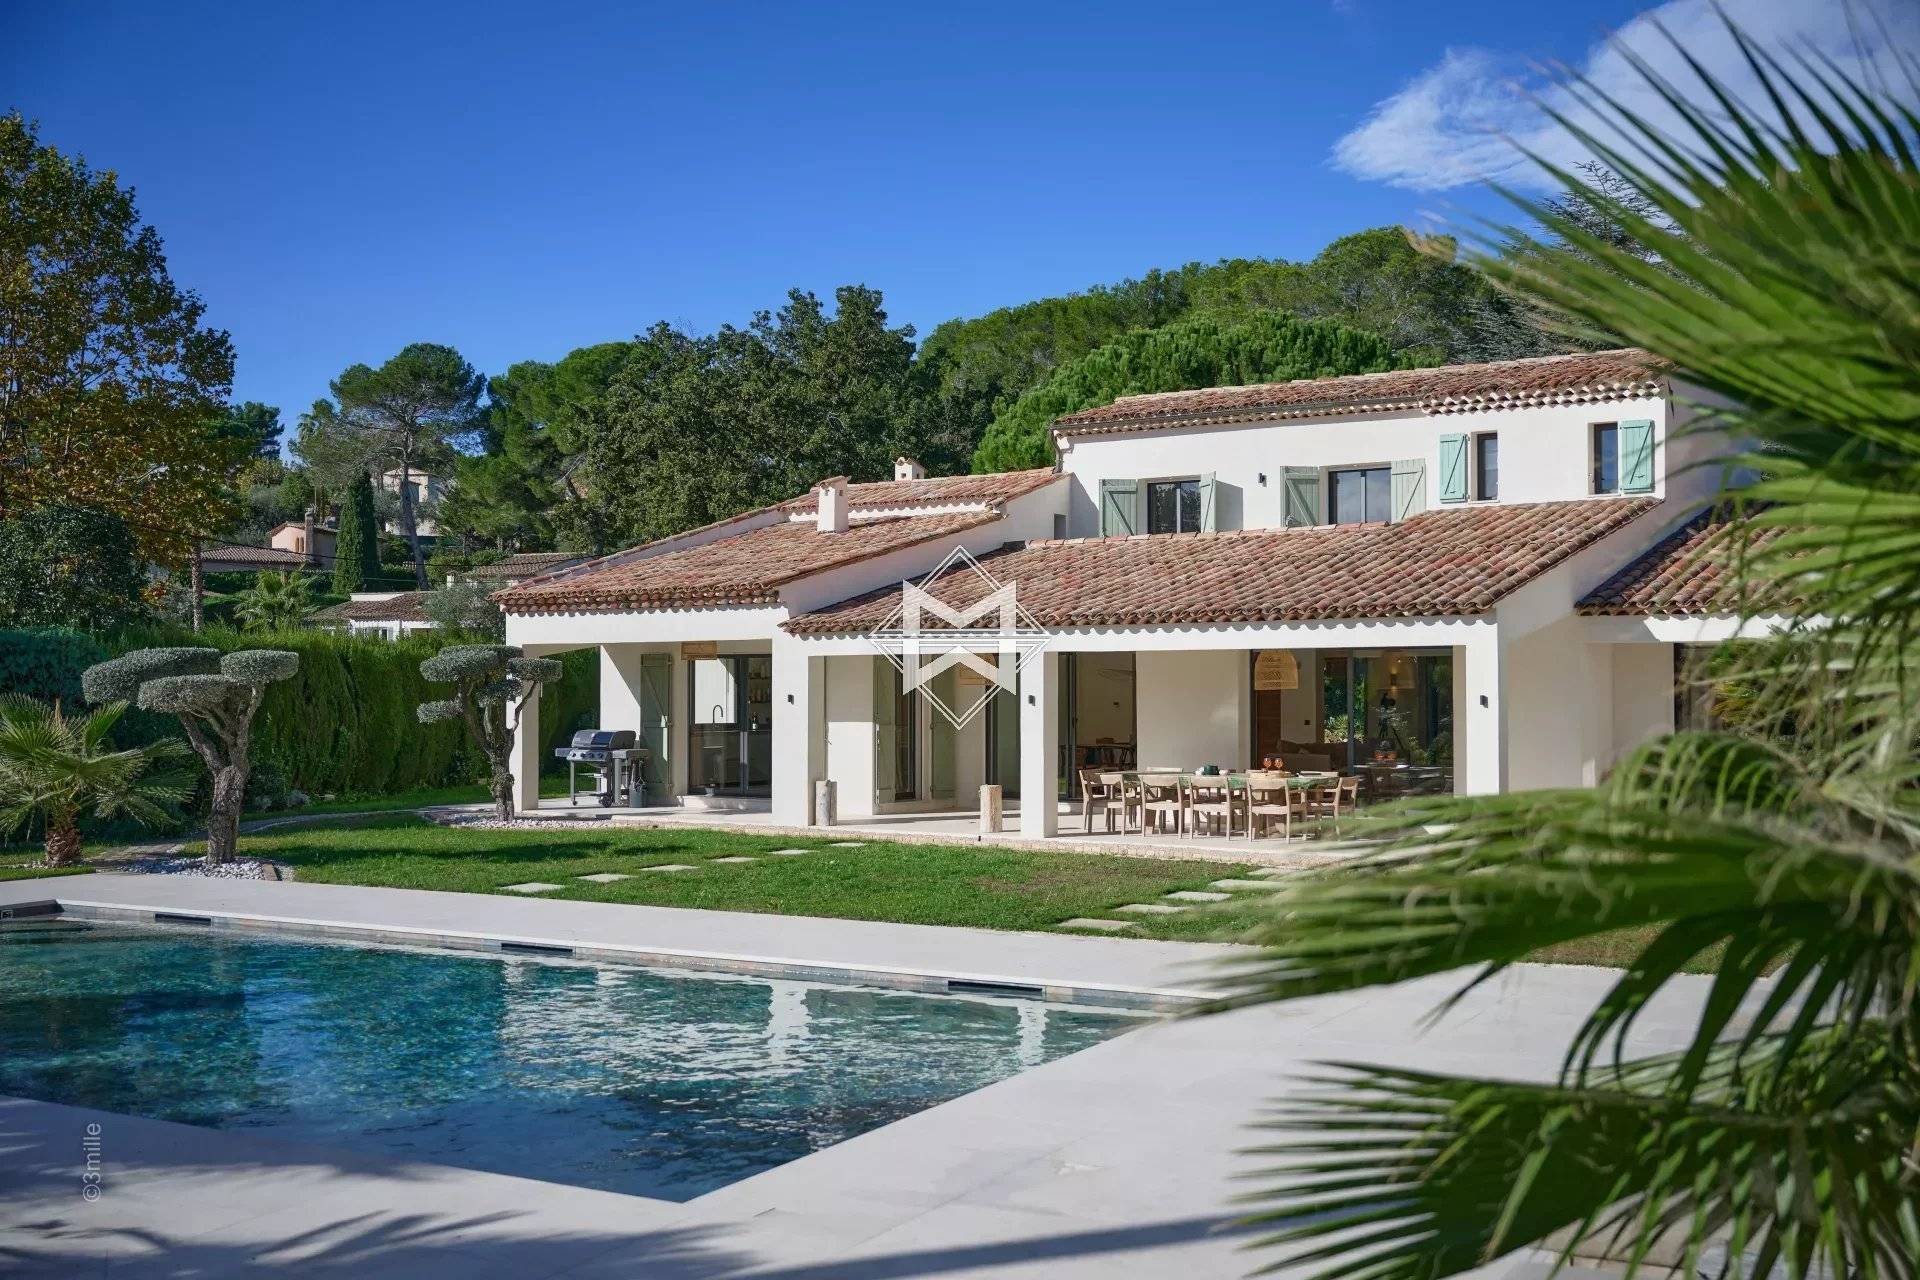 MOUGINS - Beautiful neo-Provençal villa